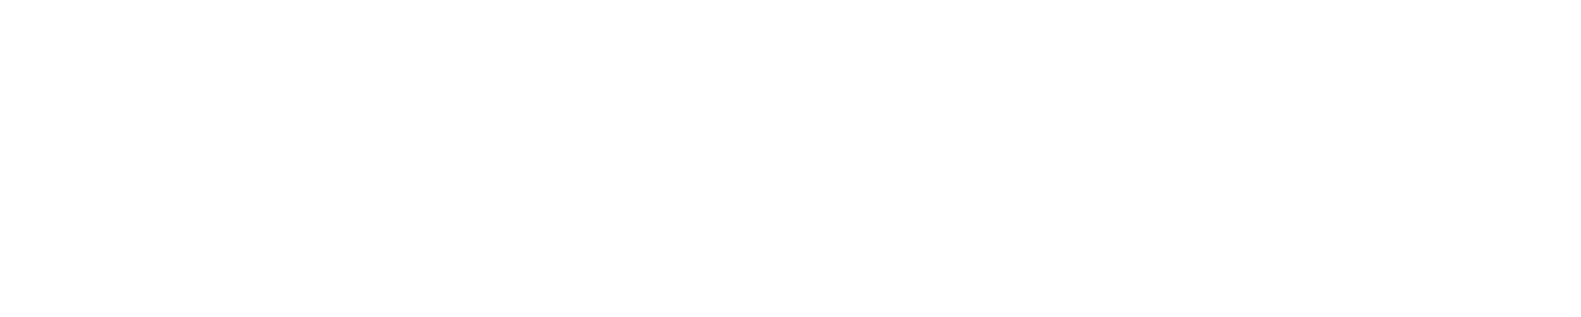 Givaudan logo large for dark backgrounds (transparent PNG)